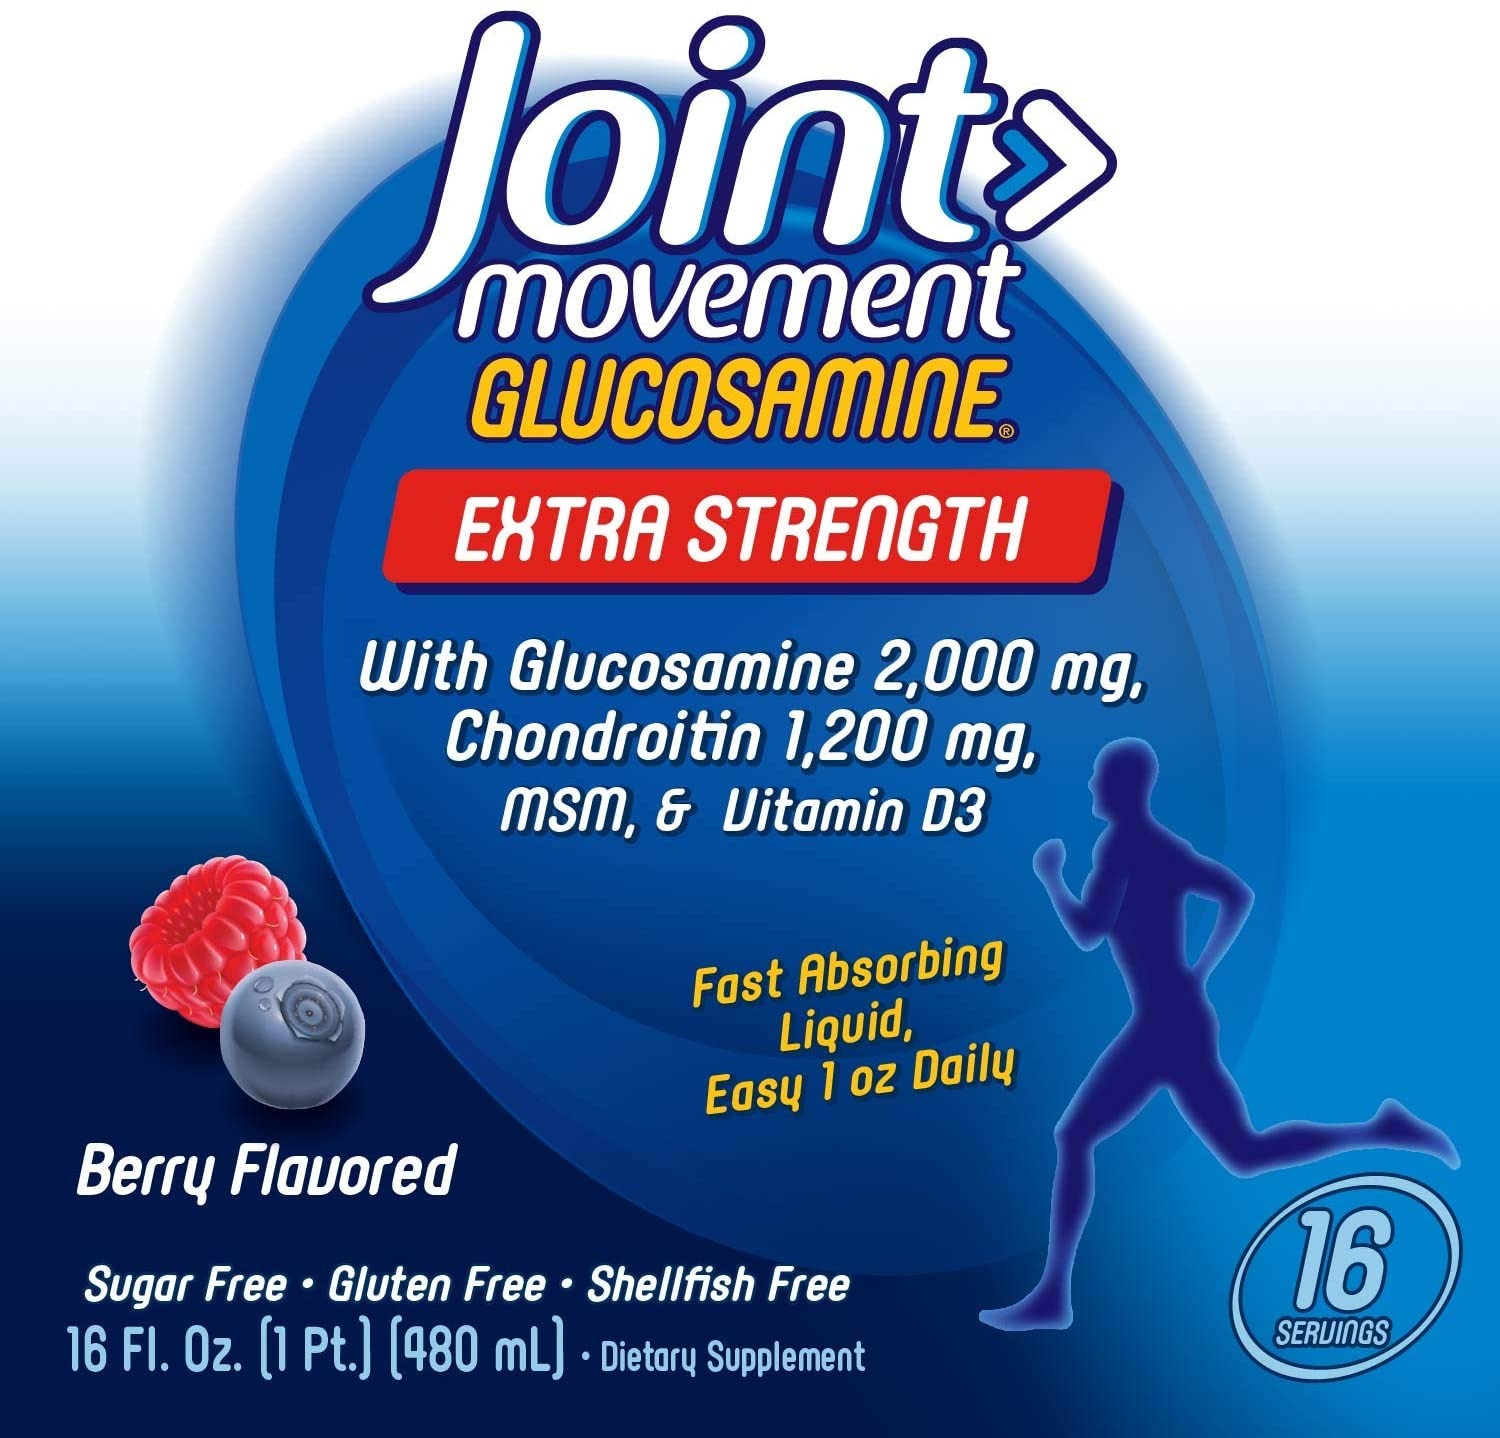 thanh phan bo xuong khop natures way joint movement glucosamine dang nuoc